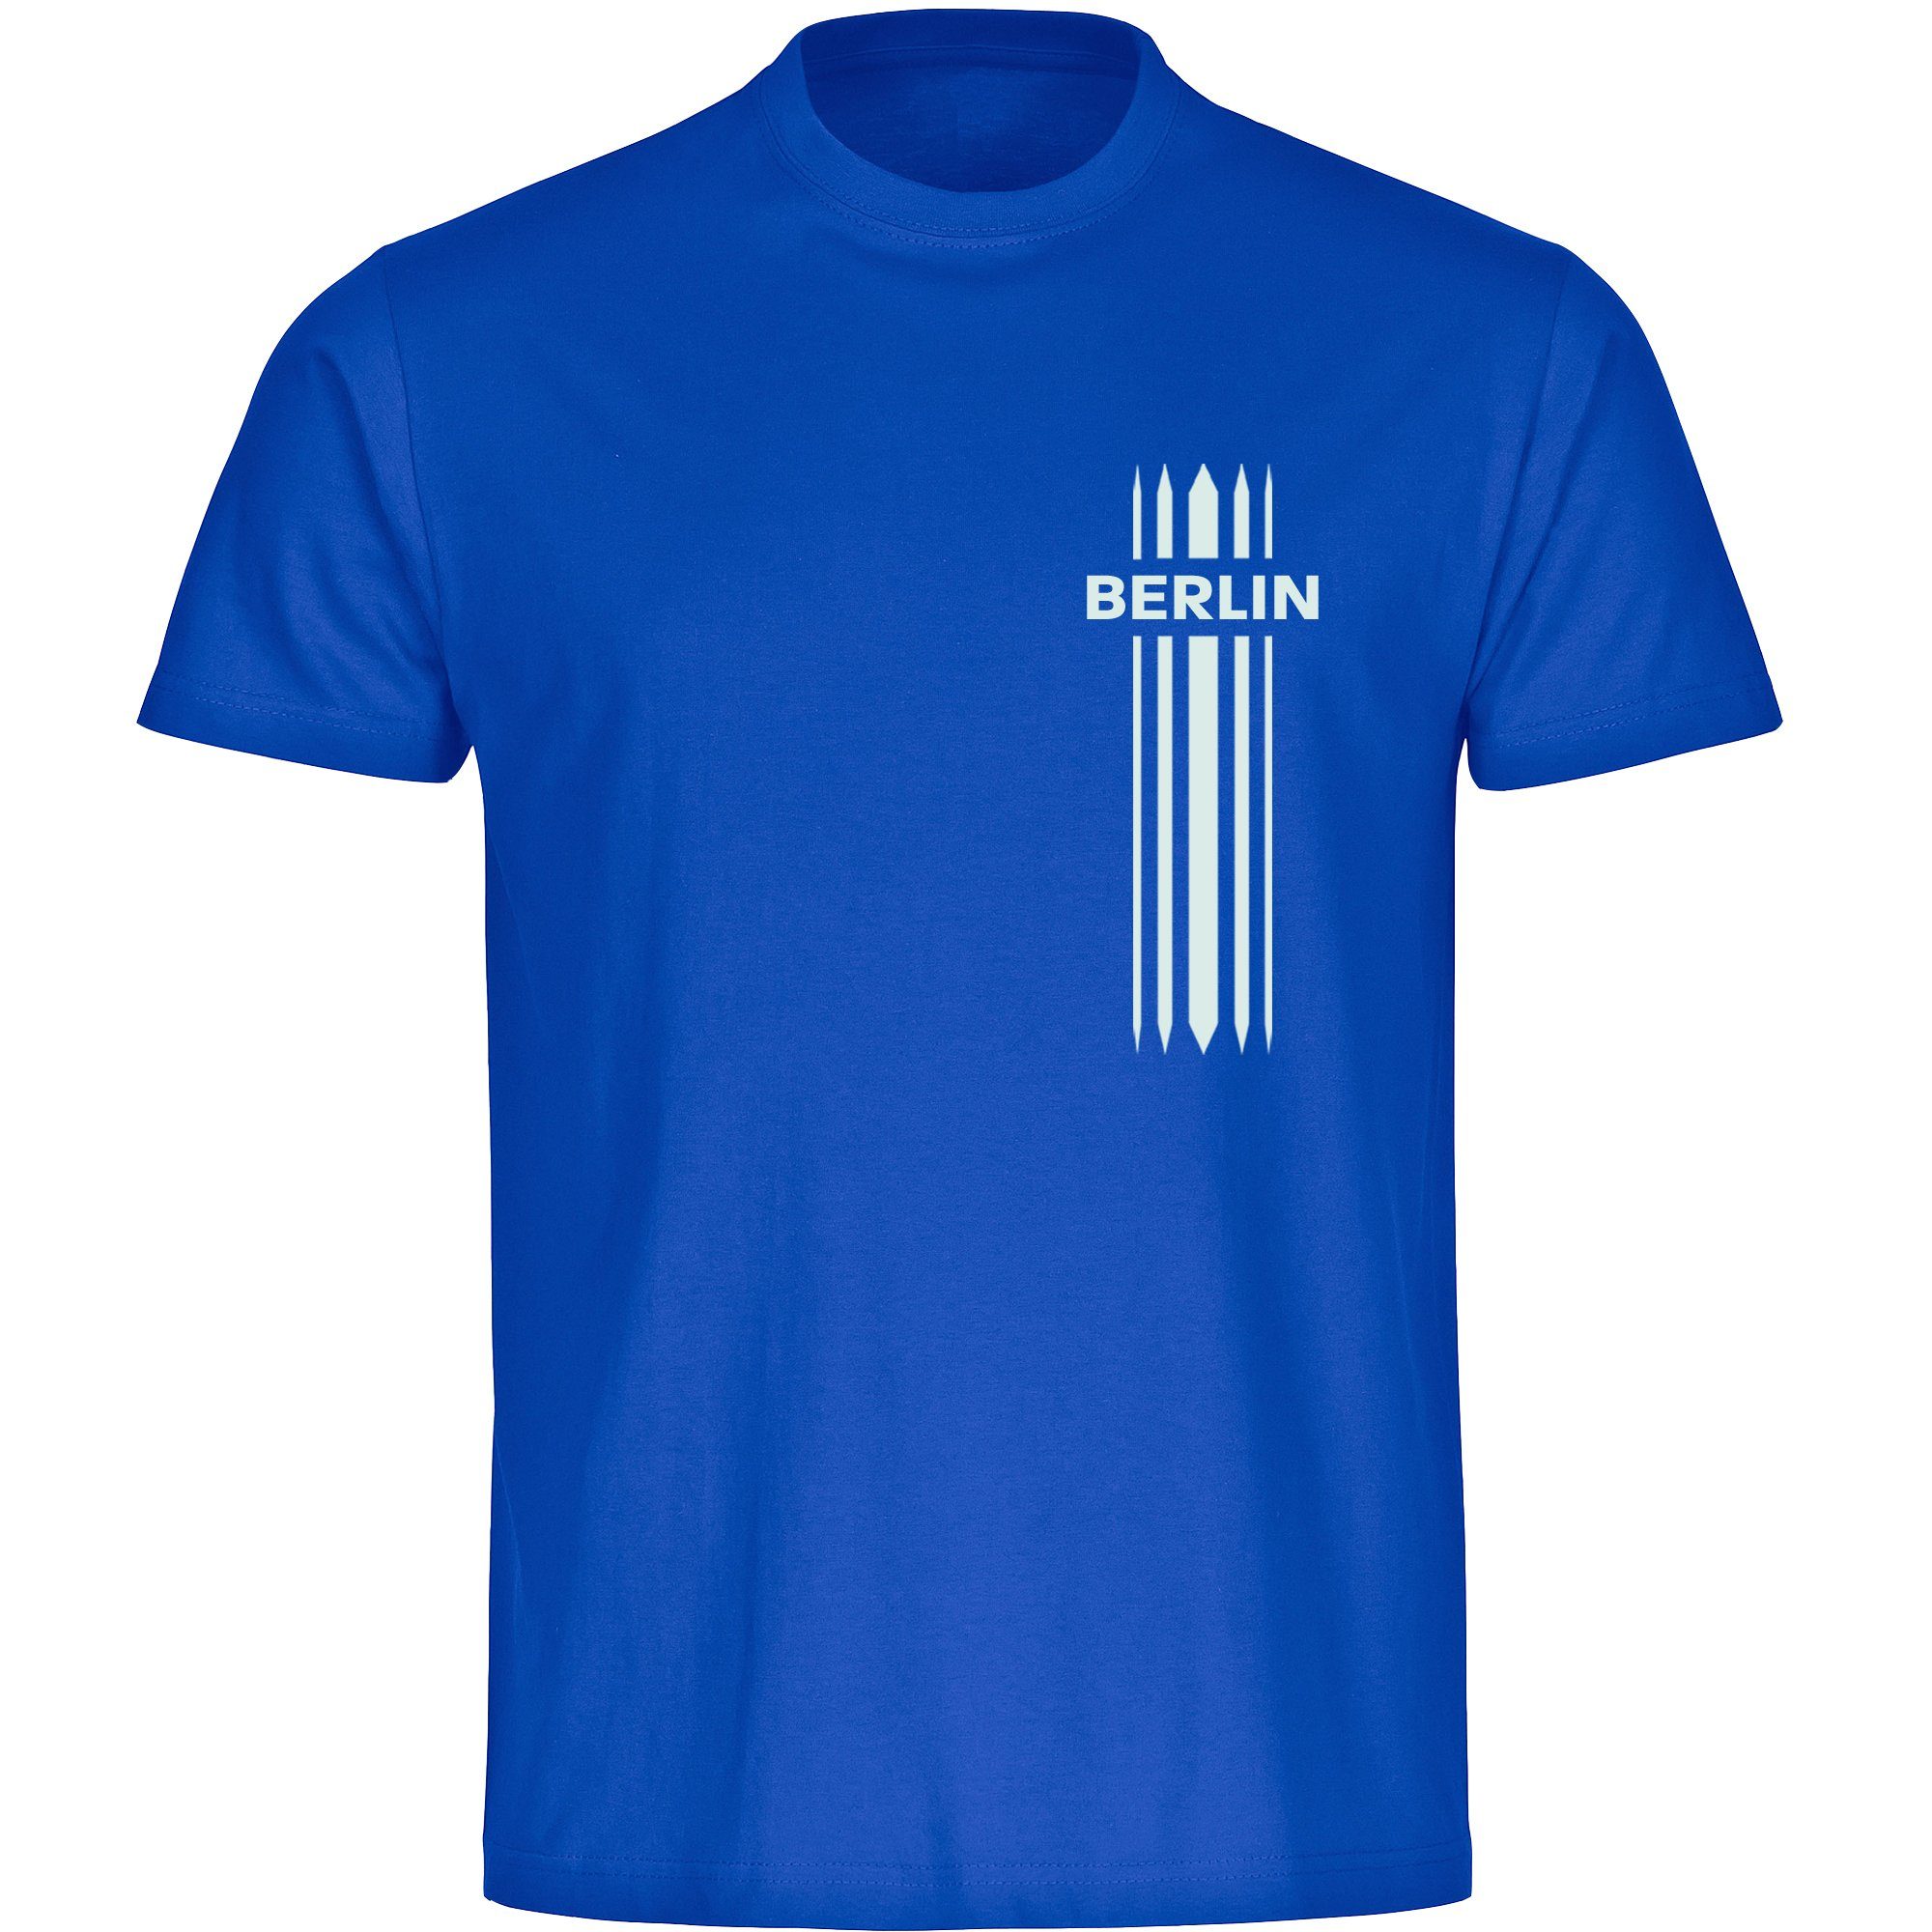 multifanshop T-Shirt Herren Berlin blau - Streifen - Männer